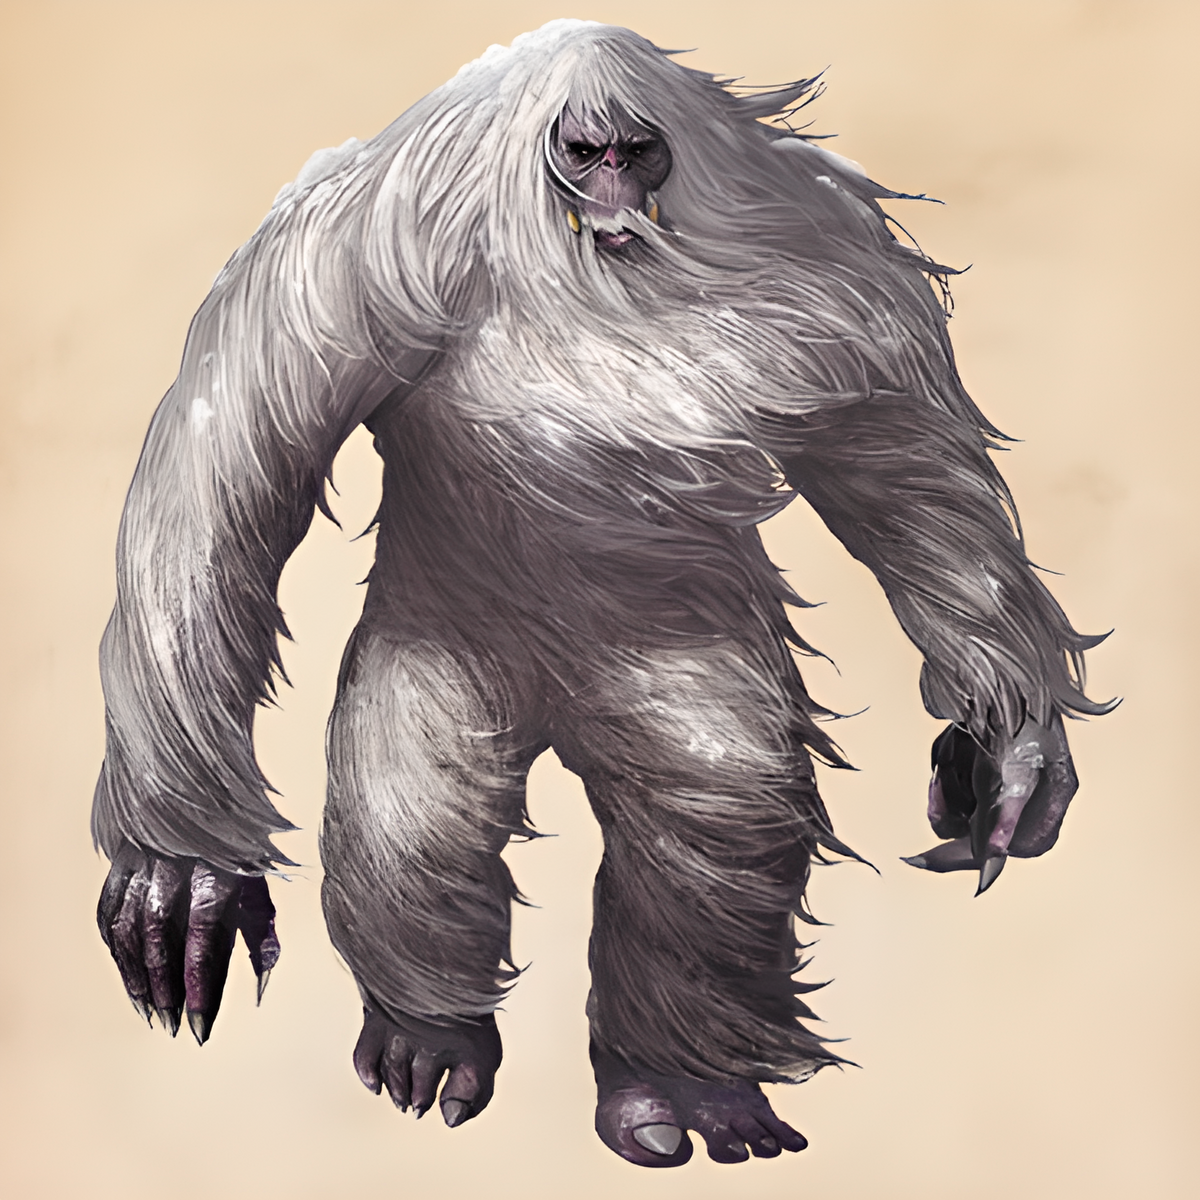 Бигфут сасквоч Йети. Биг фуд монстр Сосквоч. Монстр Bigfoot снежный человек.